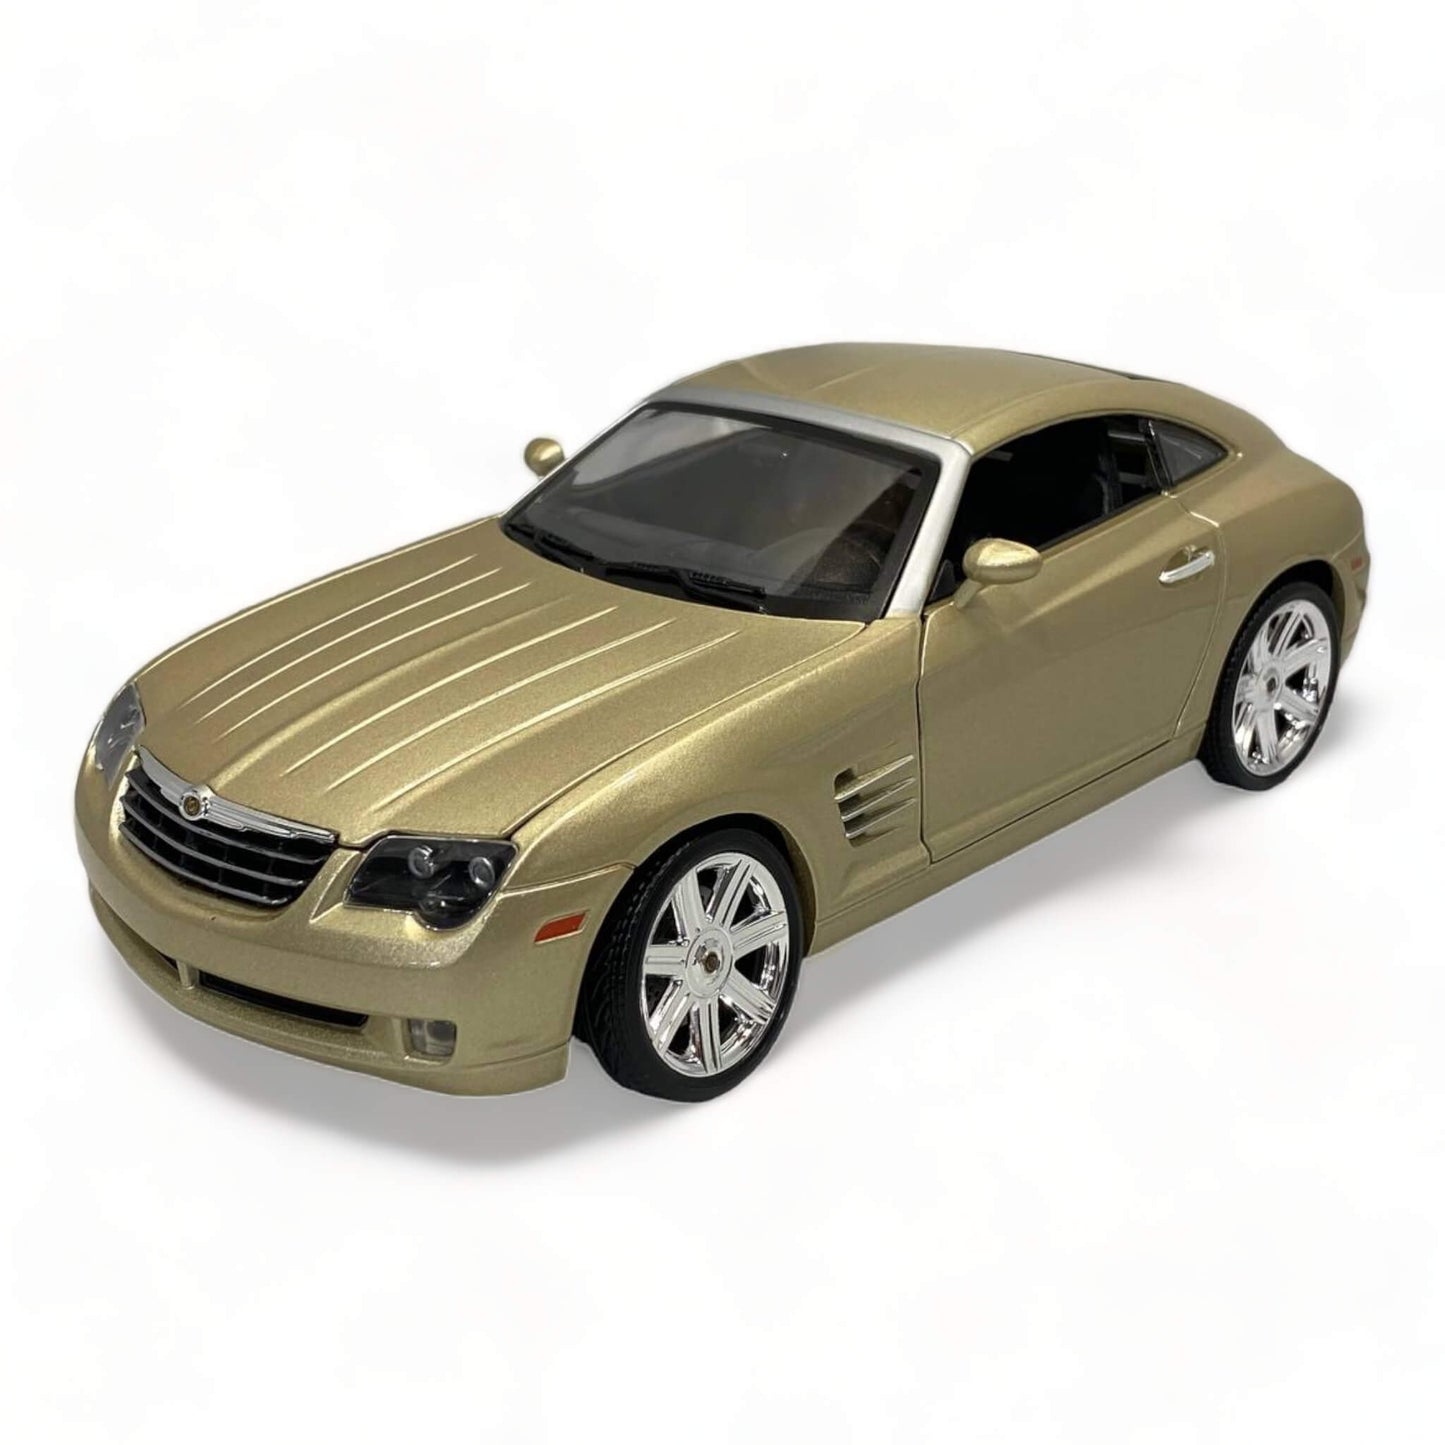 Maisto Chrysler Crossfire Gold 1/18